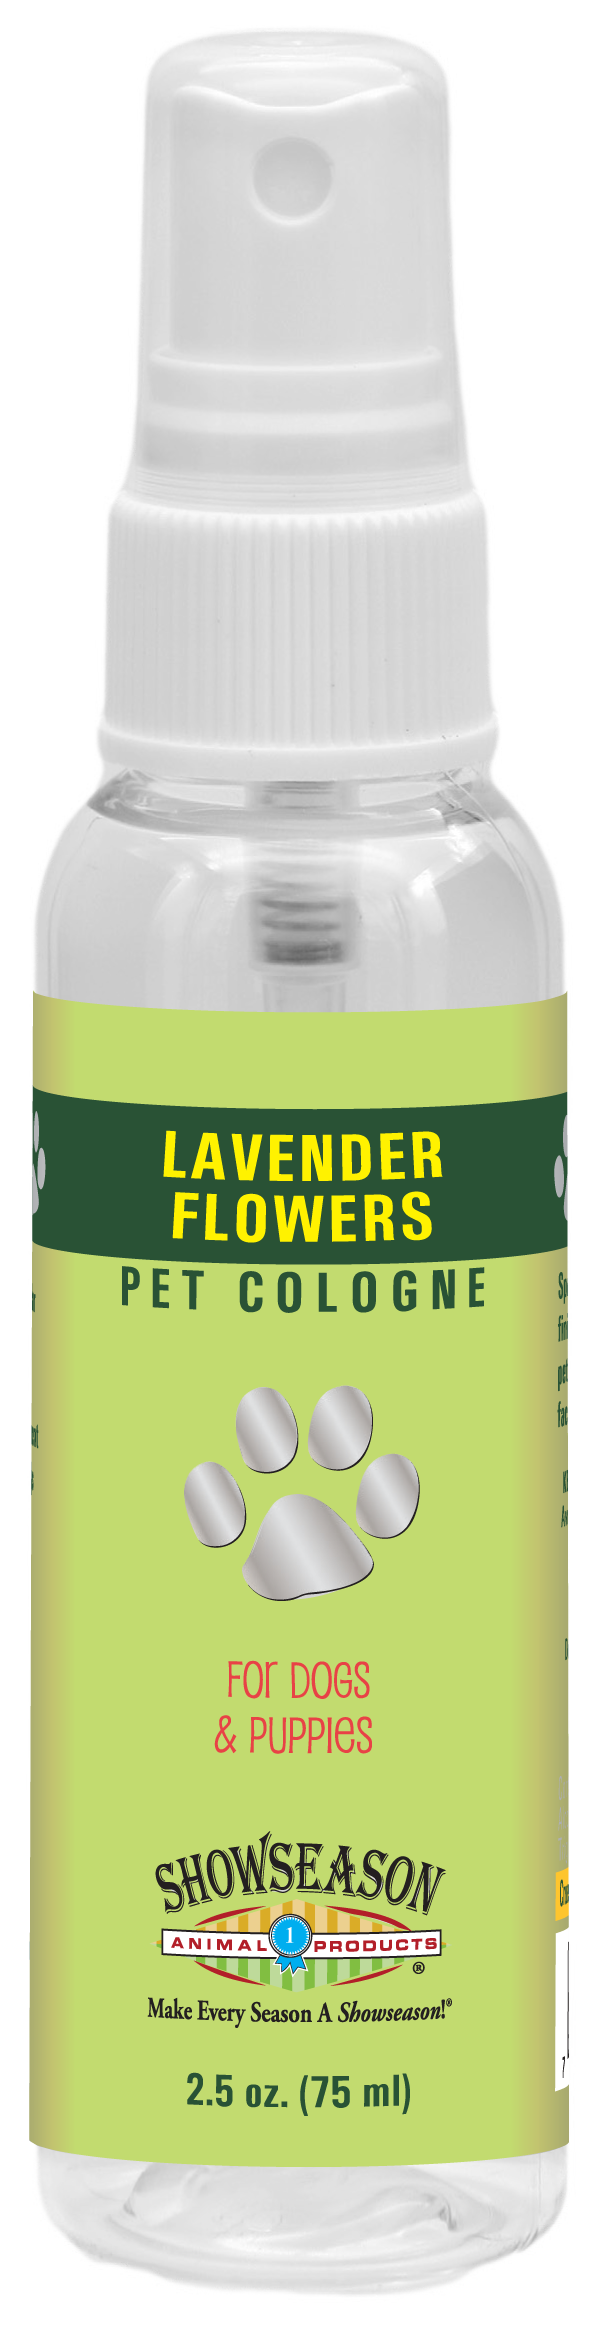 Lavender Flowers Pet Cologne